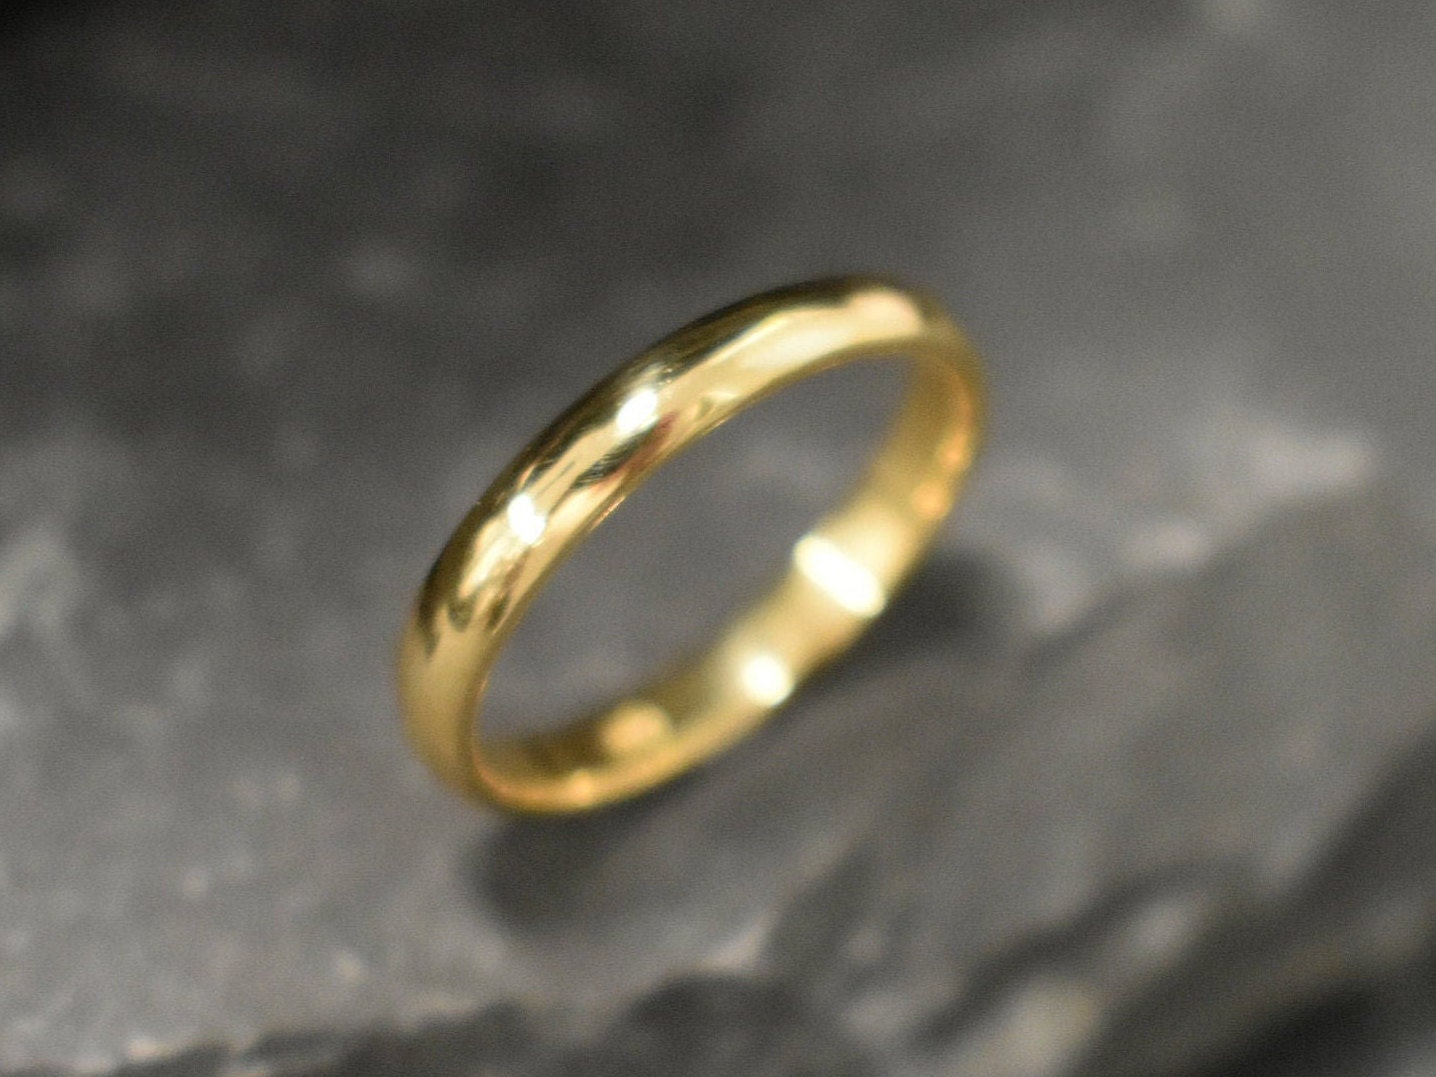 Gold Band, Wedding Gold Band, Wedding Band, Thin Gold Band, Stackable Ring, Wedding Ring, Gold Wedding Ring, Gold Plated Ring, 18K Gold Ring